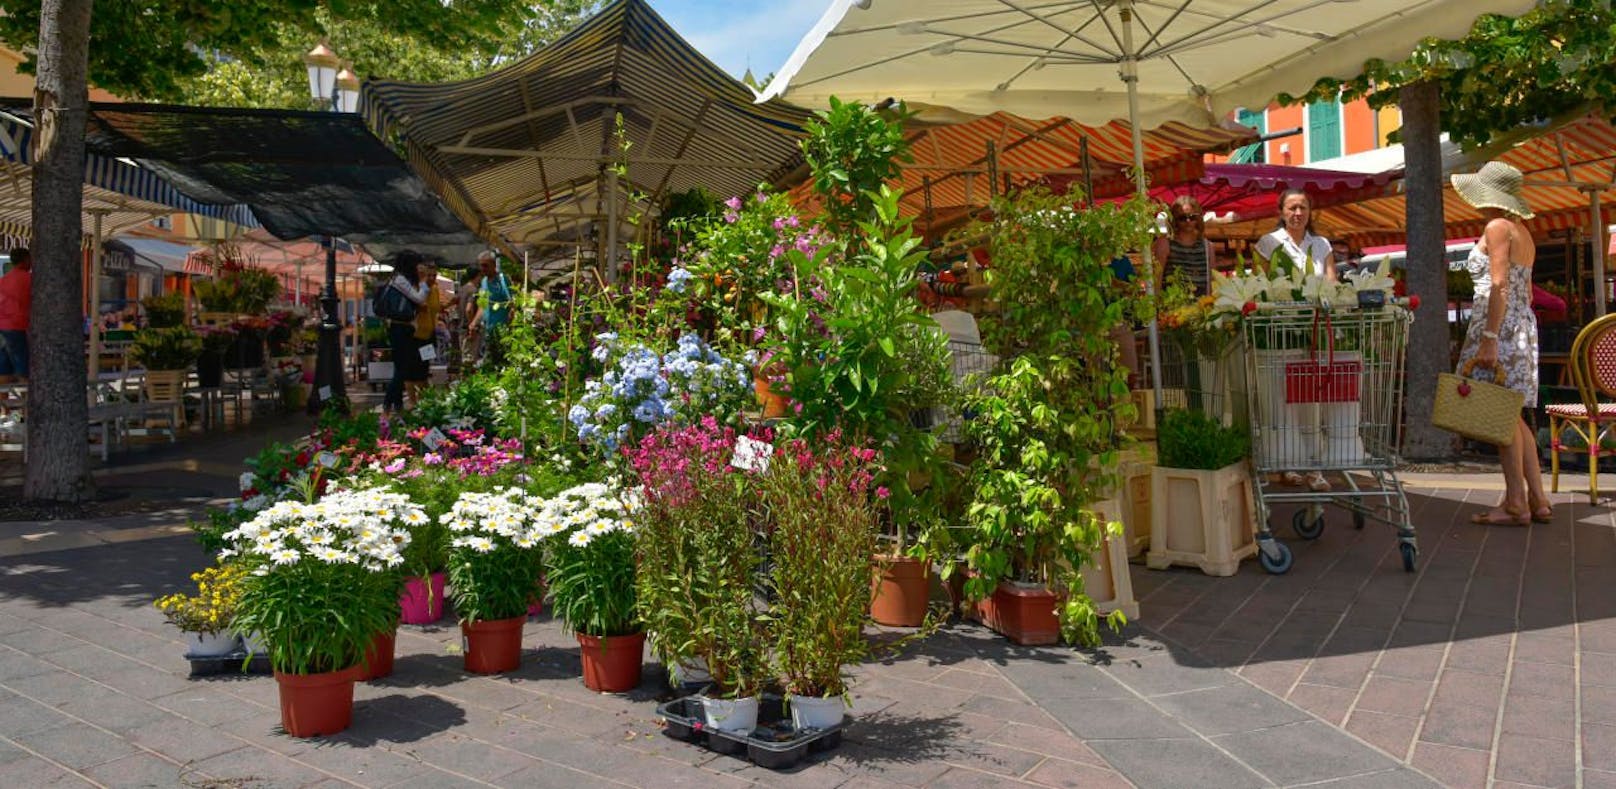 Die Wiener Gärtner bieten Gemüse- und Blühpflanzen aus eigener Produktion an.